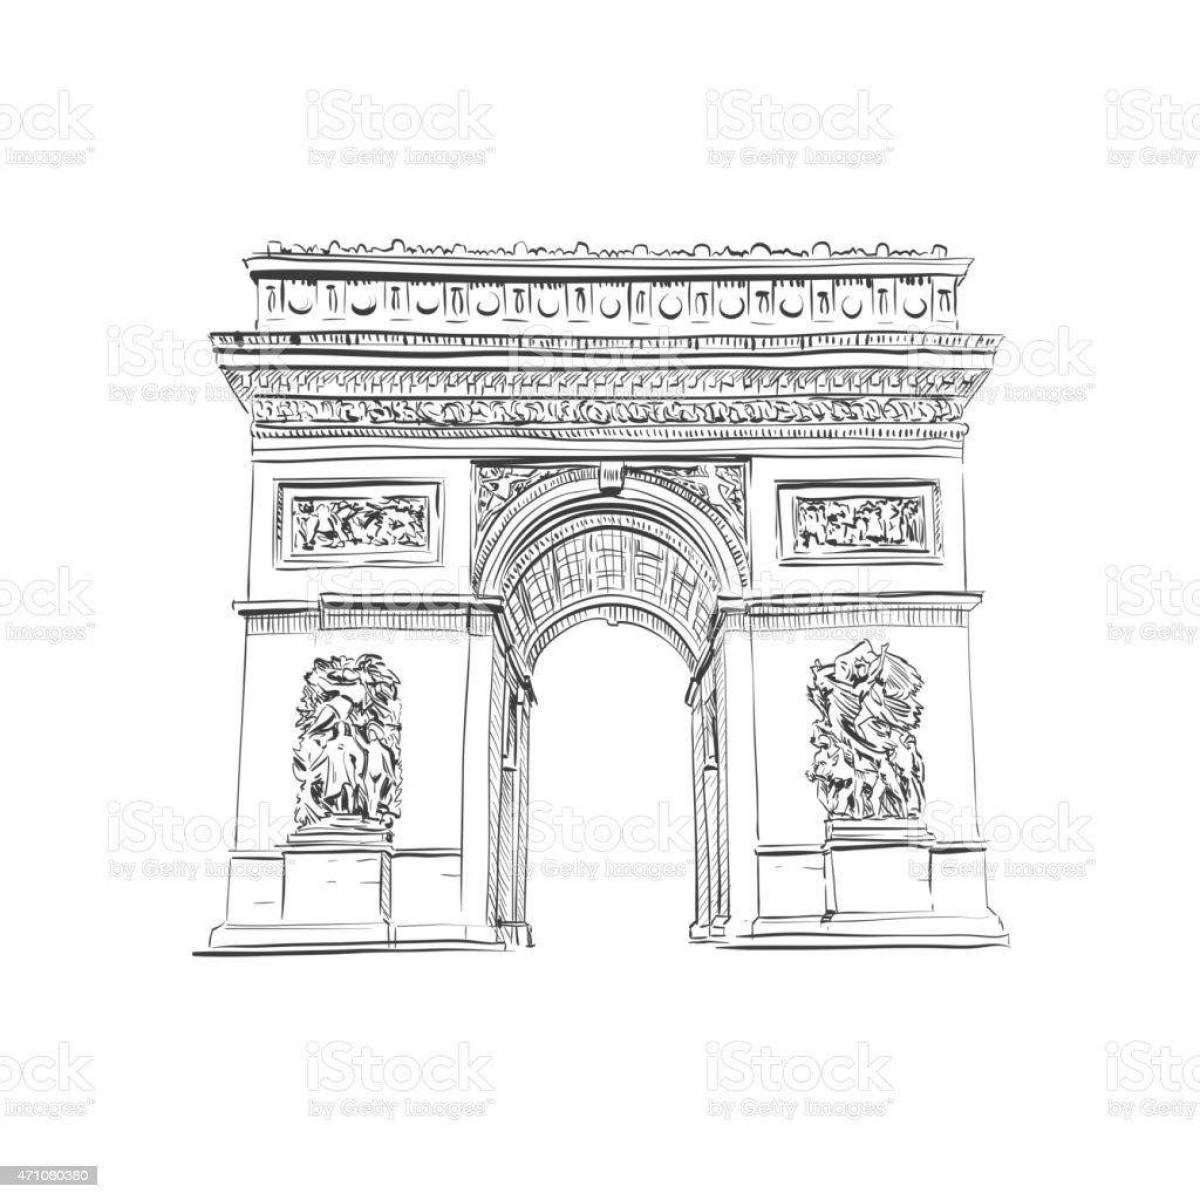 Раскраска монументальная триумфальная арка